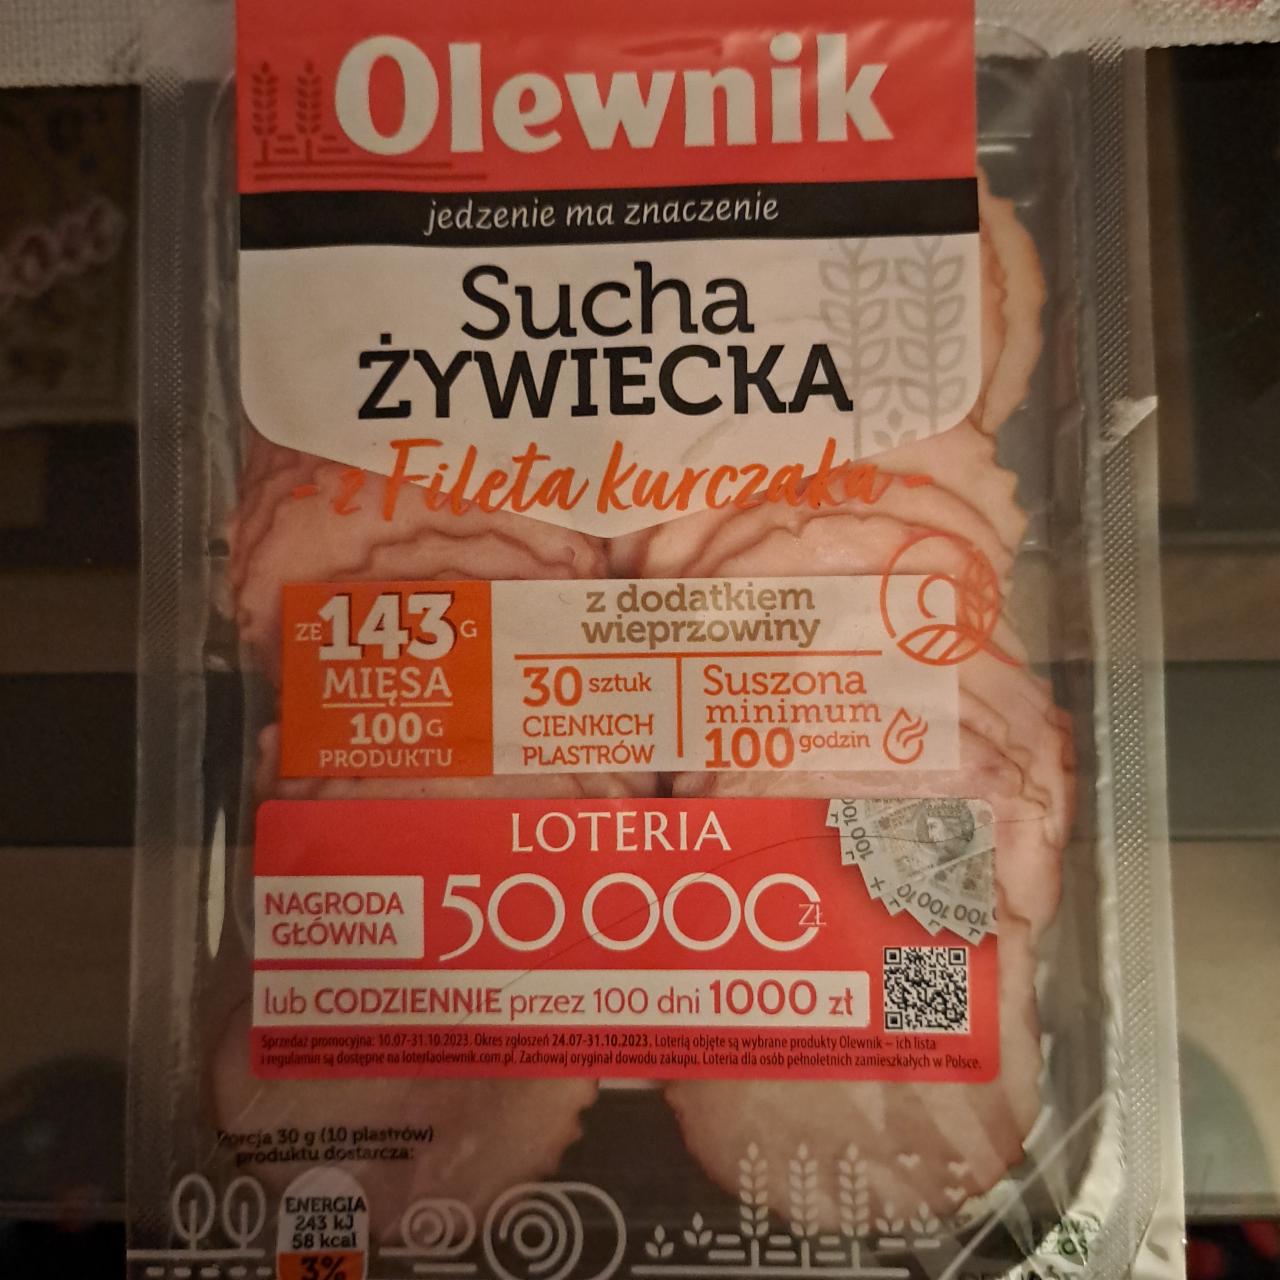 Fotografie - Sucha żywiecka z fileta kurczaka z dodatkiem wieprzowiny Olewnik